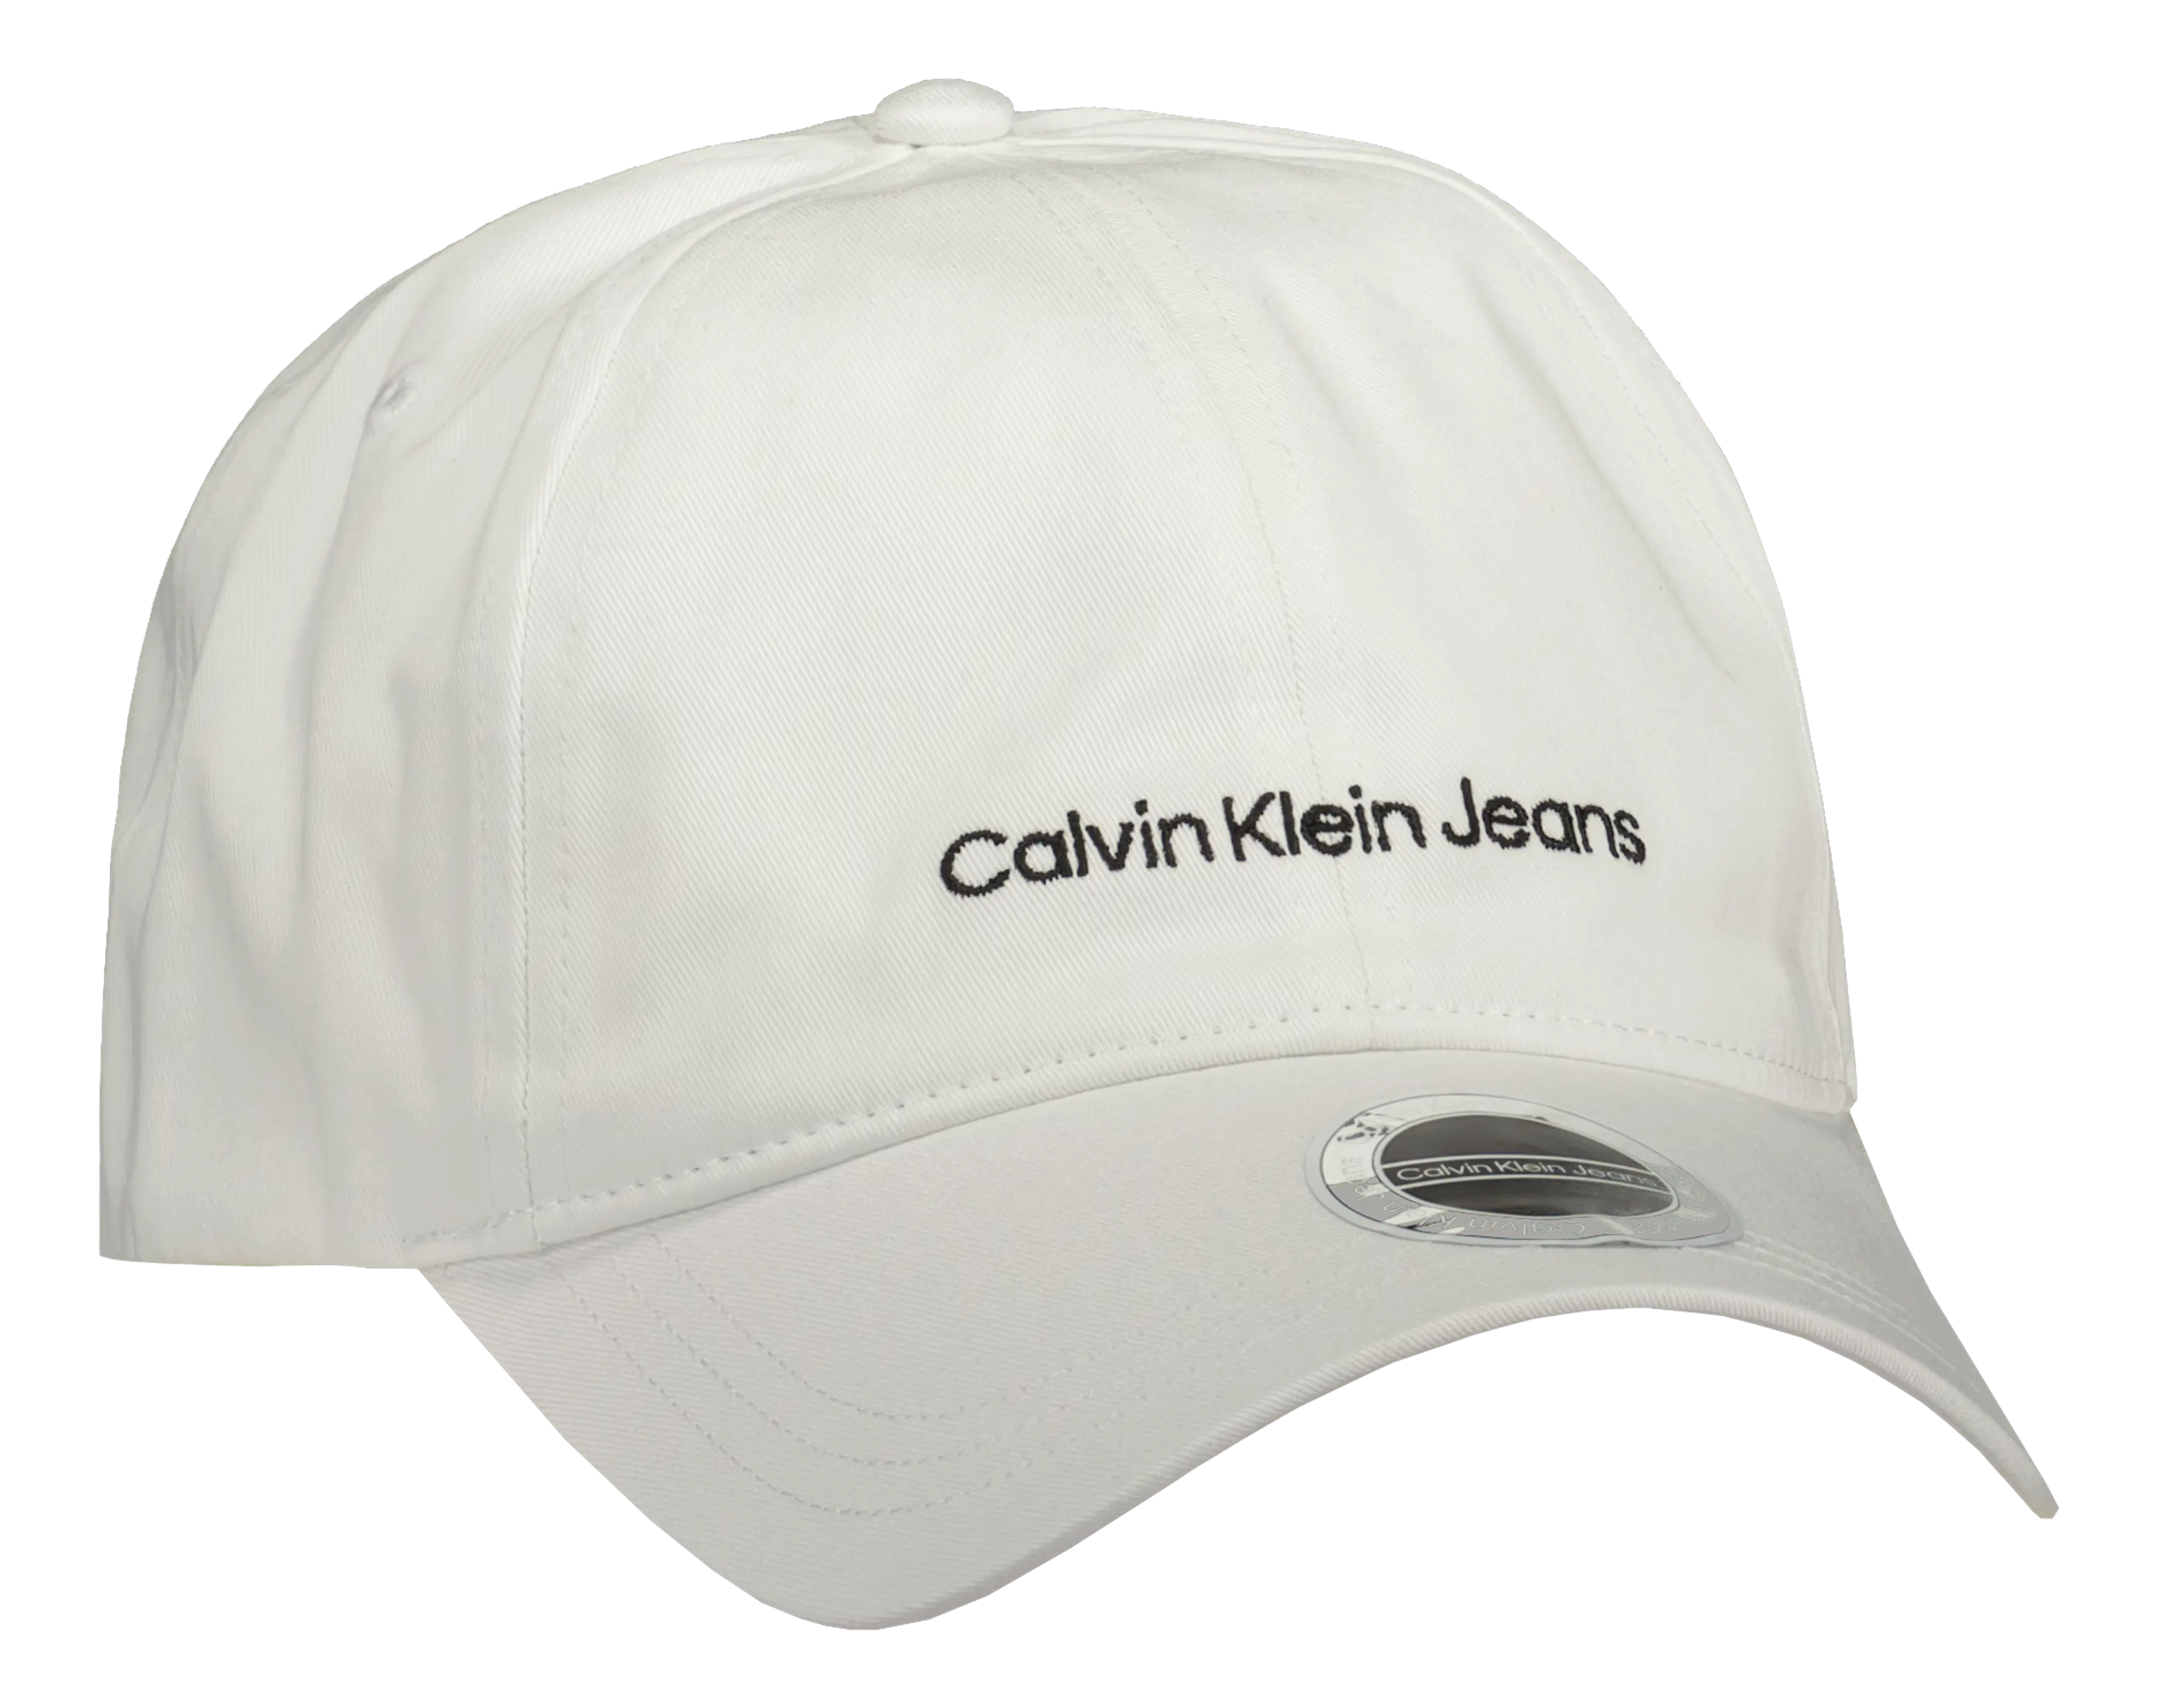 Calvin Klein Jeans Institutional lippalakki